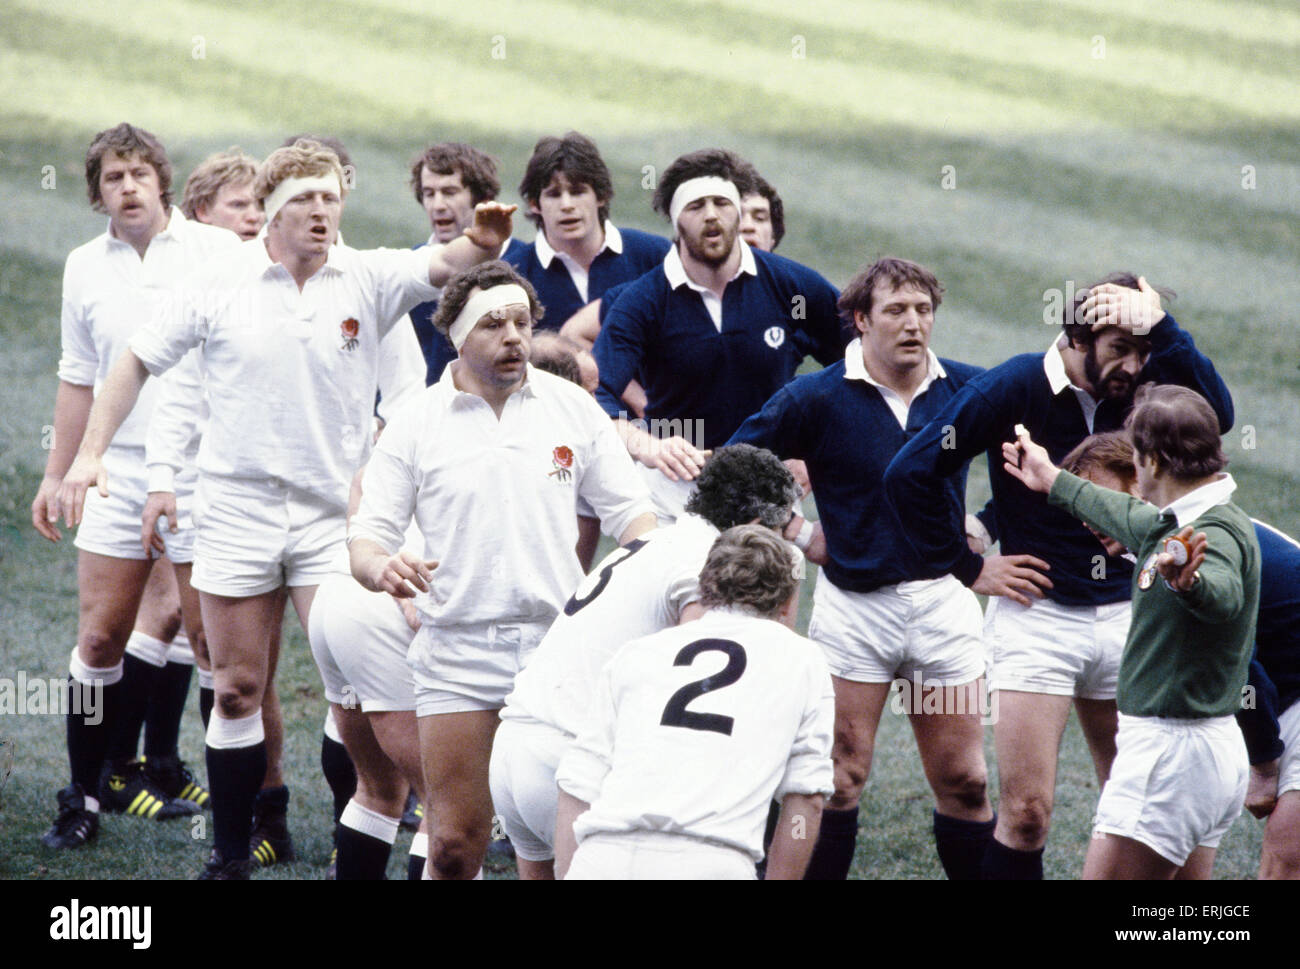 Il Rugby 5 Nazioni partita internazionale a Twickenham. Inghilterra 23 v Scozia 17. L'Inghilterra del Bill Beaumont nel lineout. Il 21 febbraio 1981. Foto Stock